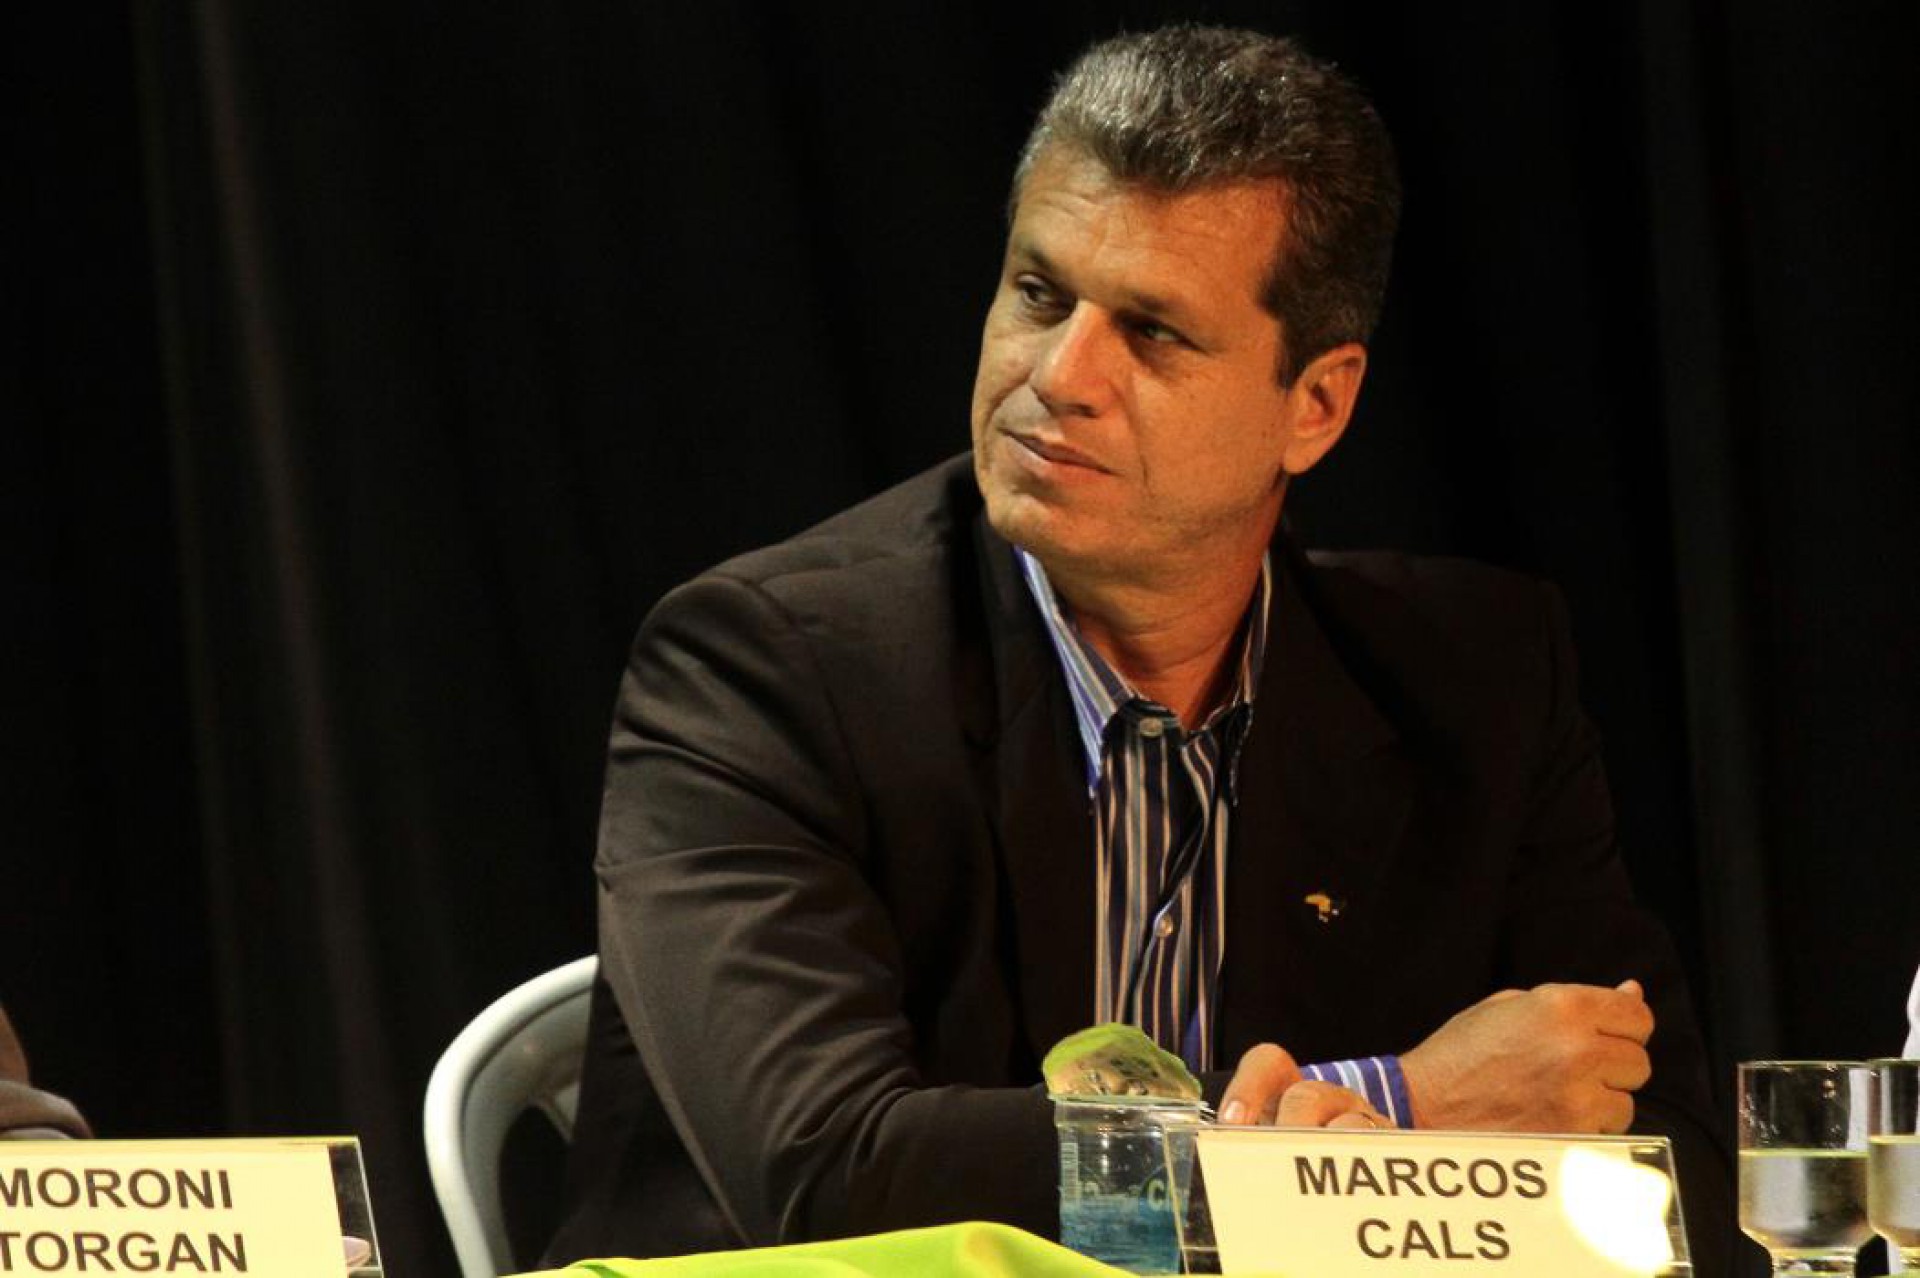 Marcos Cals (Foto: IGOR DE MELO, em 13/09/2012)